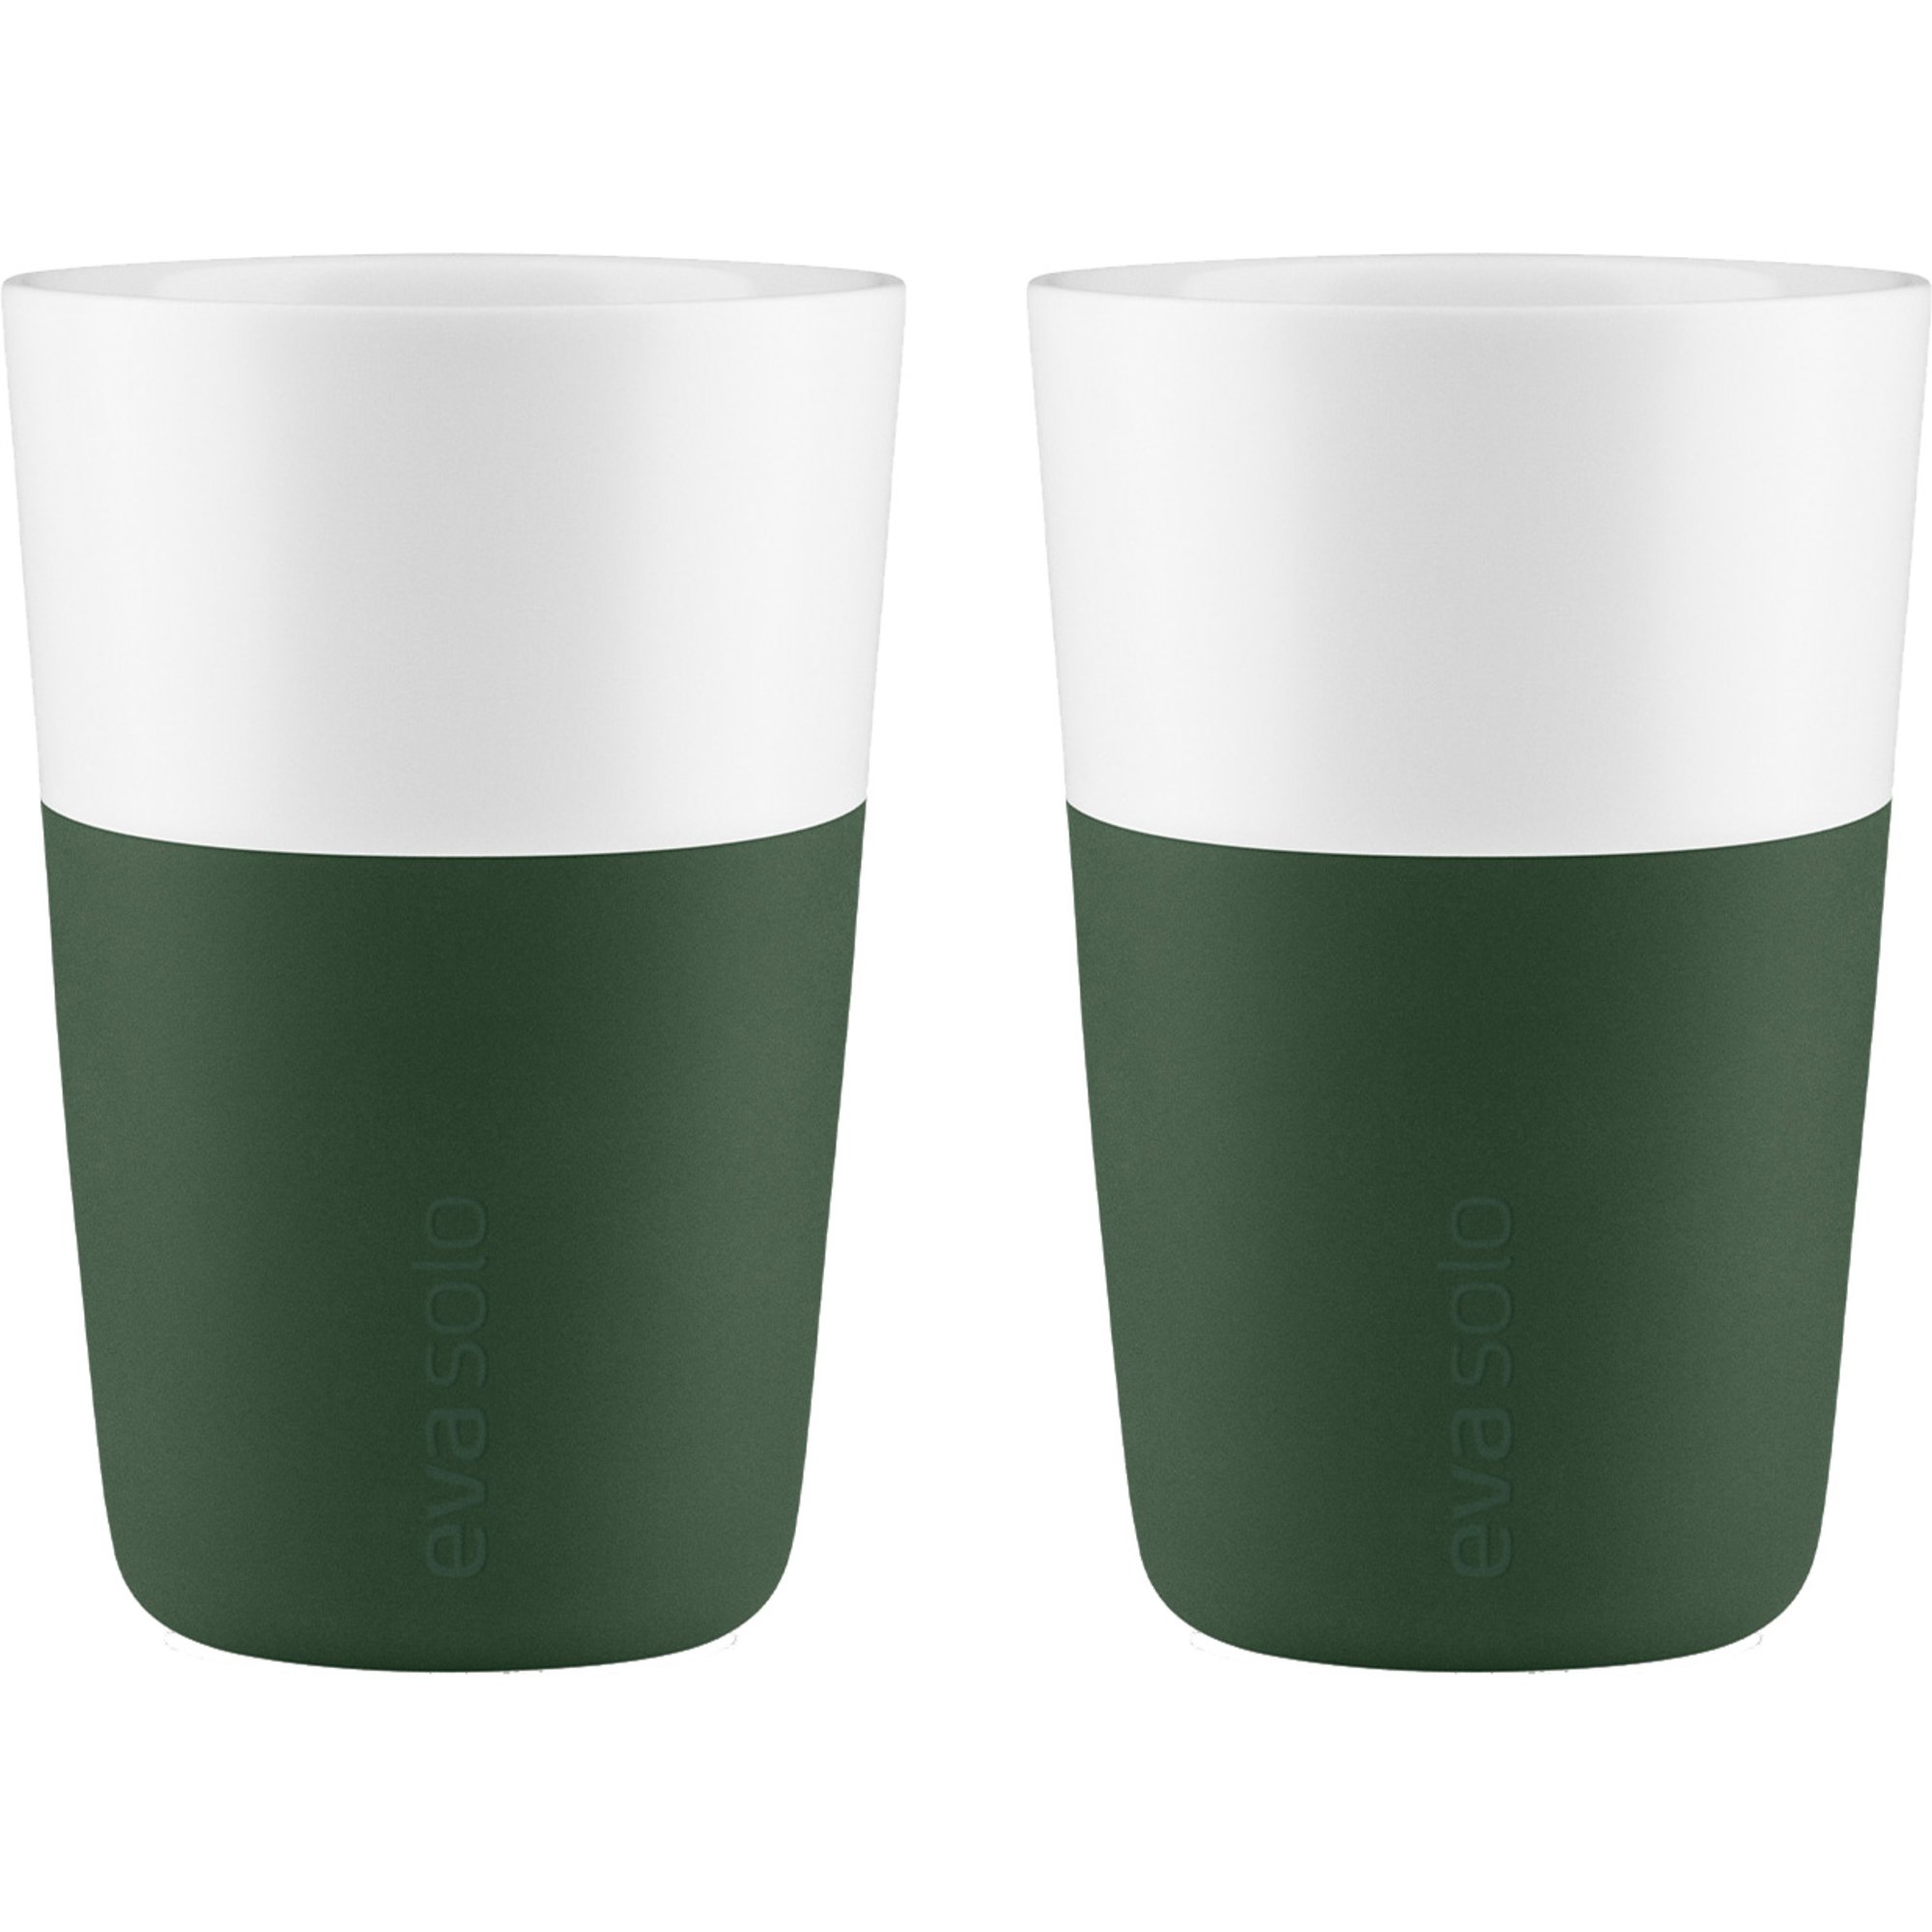 Läs mer om Eva Solo Cafe Latte-mugg 2 st, emerald green